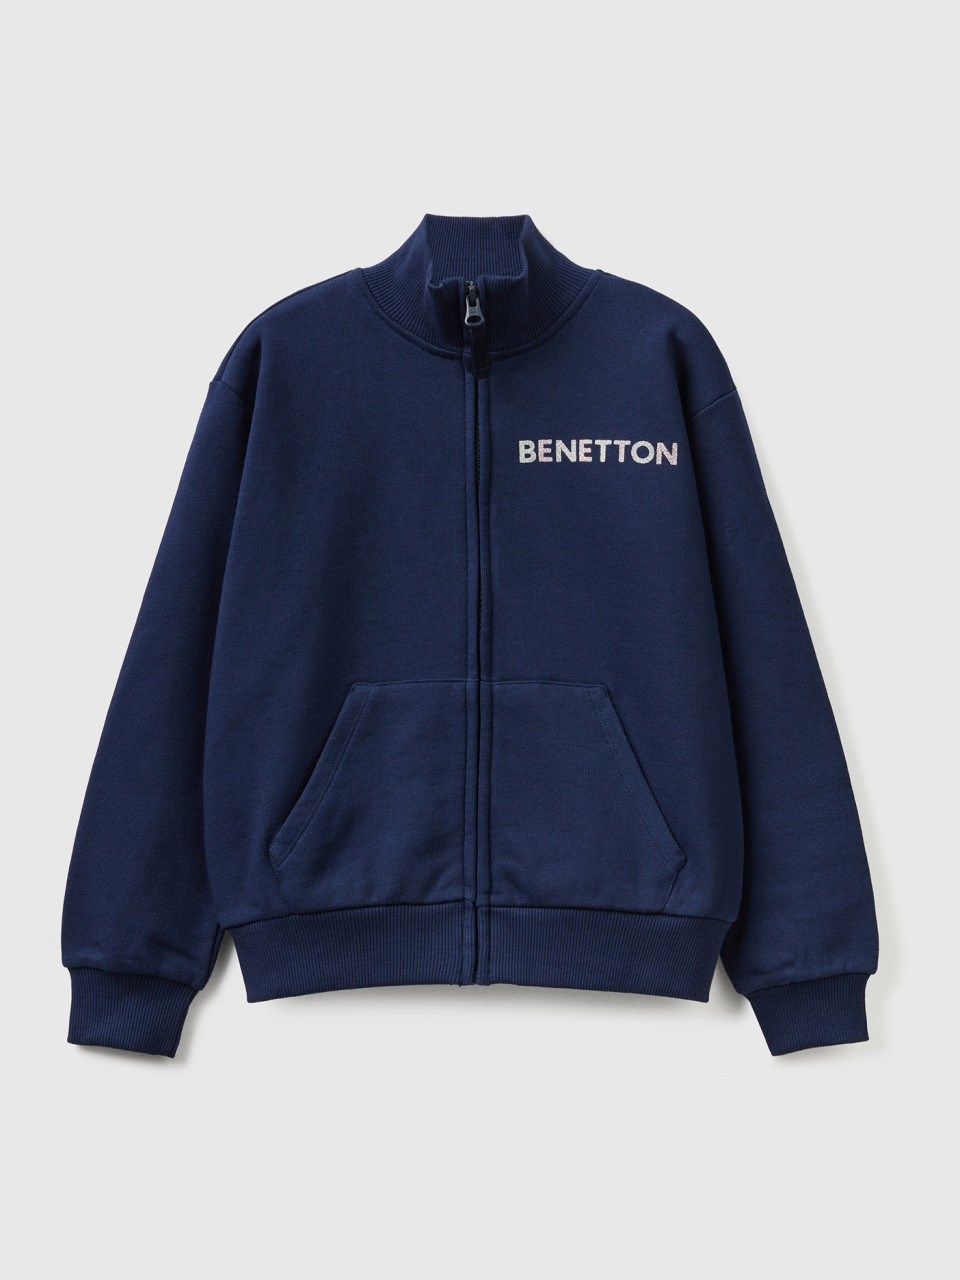 Benetton, Sweatshirt With Zip And Collar, Dark Blue, Kids